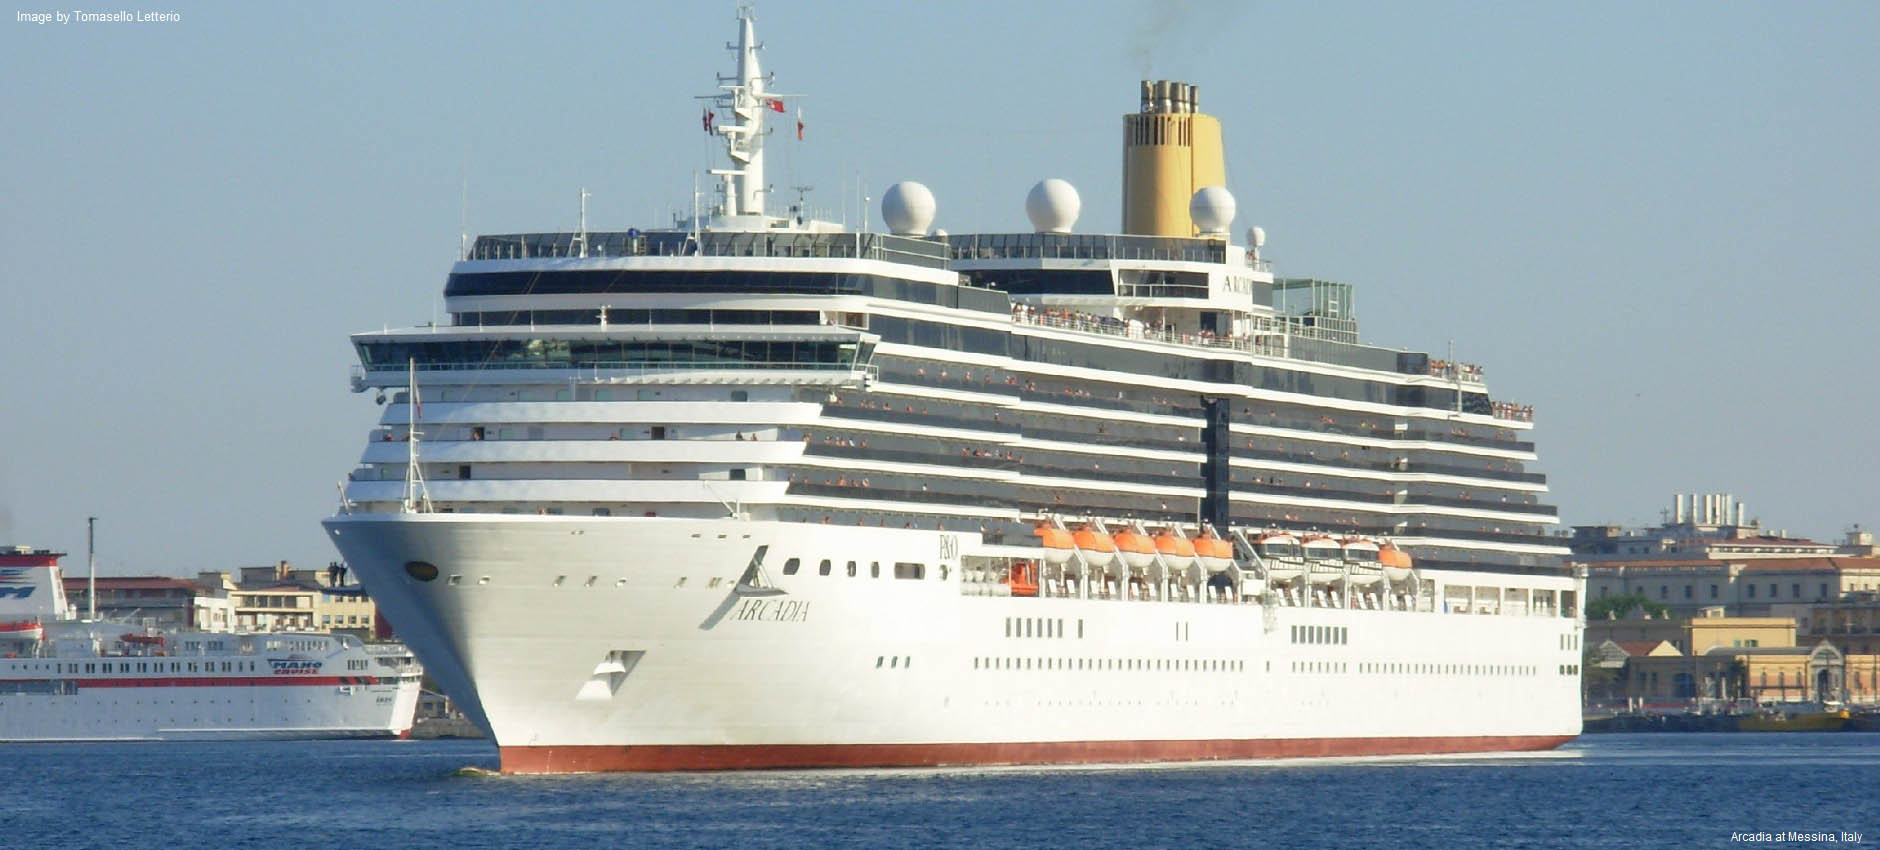 youtube arcadia cruise ship